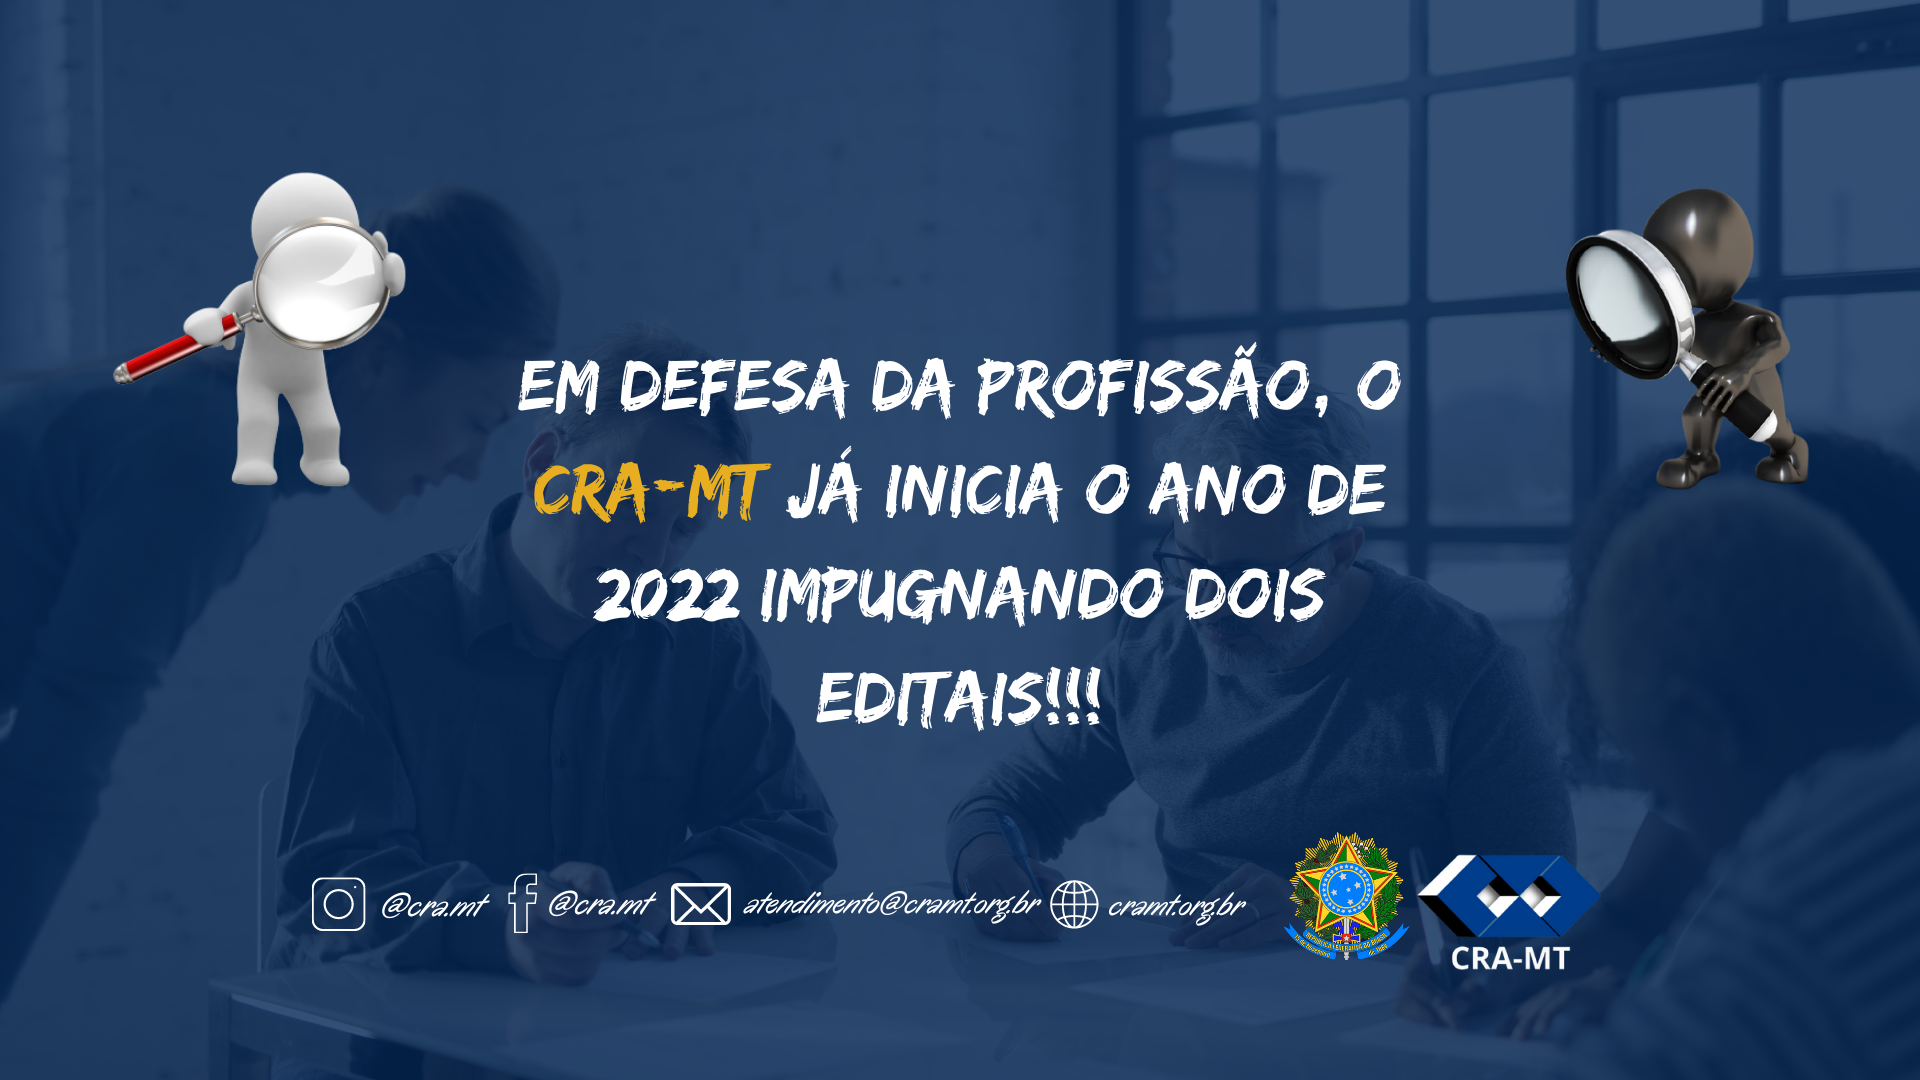 You are currently viewing EM DEFESA DA PROFISSÃO, O CRA-MT JÁ INICIA O ANO DE 2022 IMPUGNANDO DOIS EDITAIS!!!